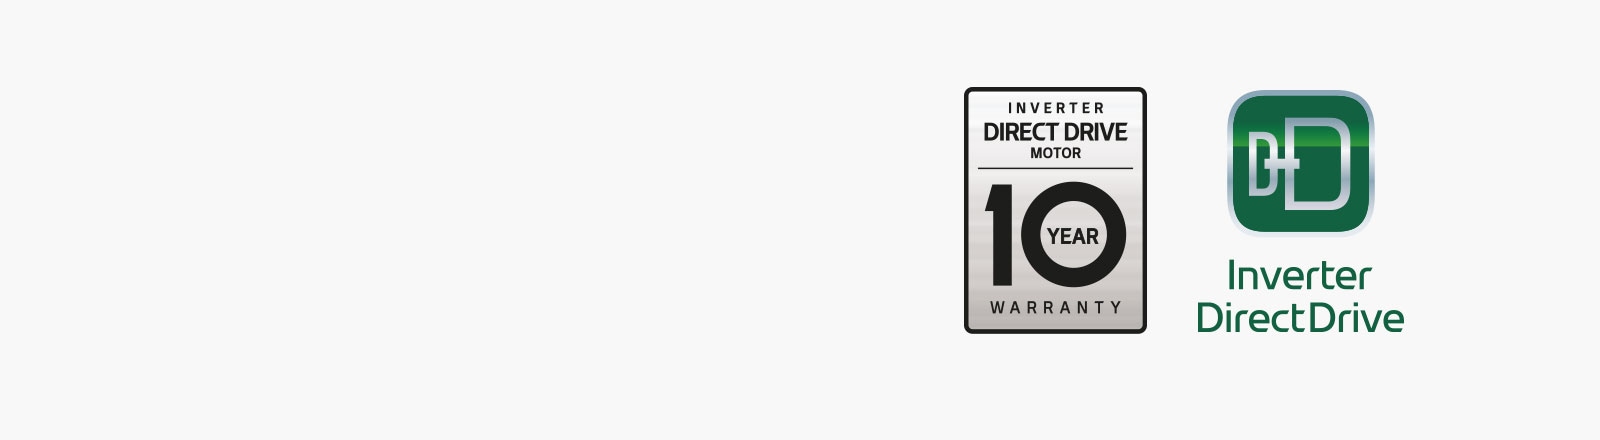 Az Inverter Direct Drive logó és 10 év garancia logó látható.